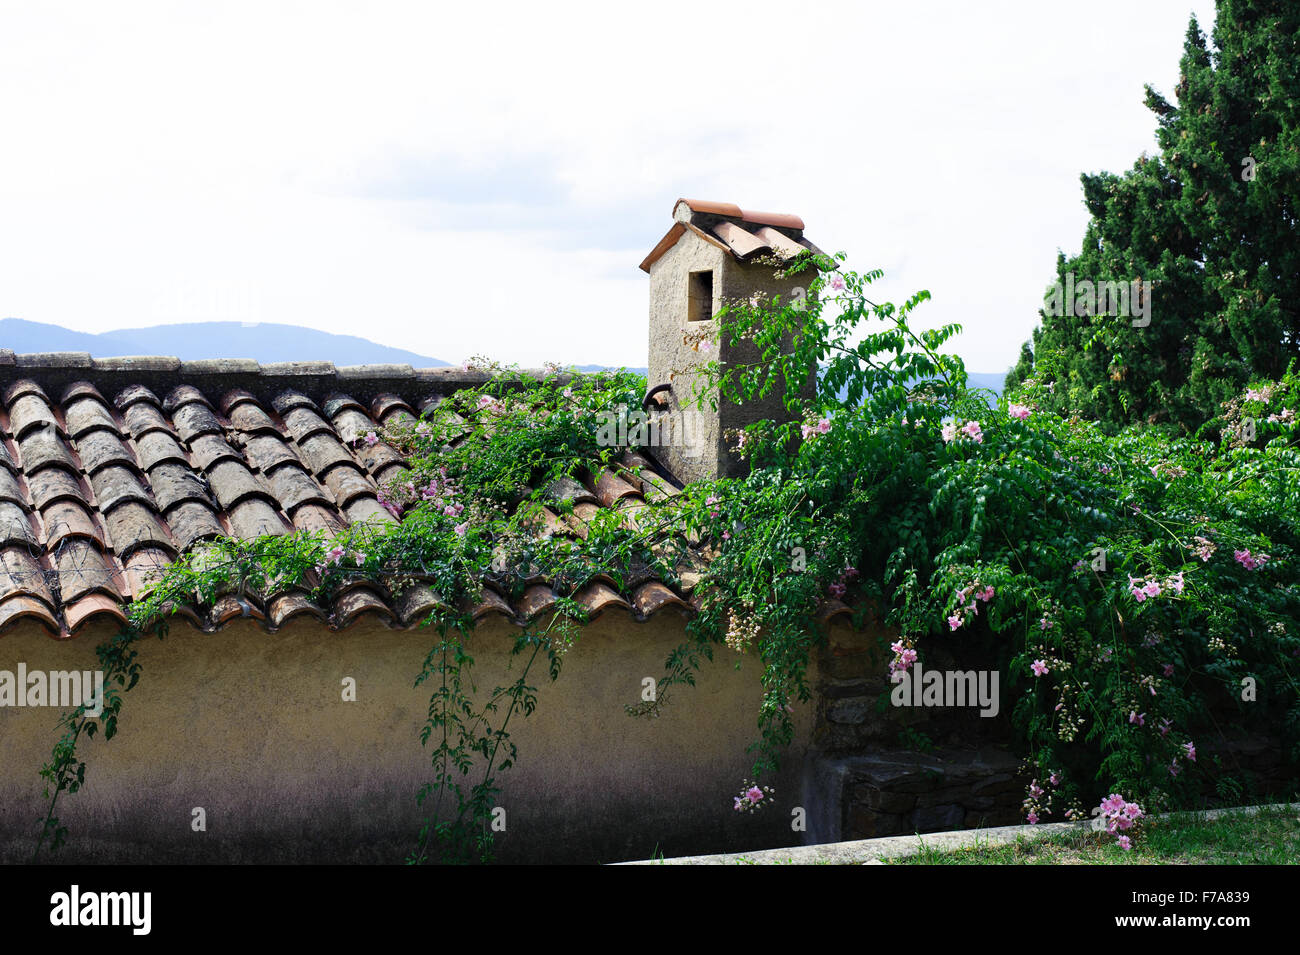 Alten Ziegeldach um einen grünen Garten in Frankreich Stockfoto